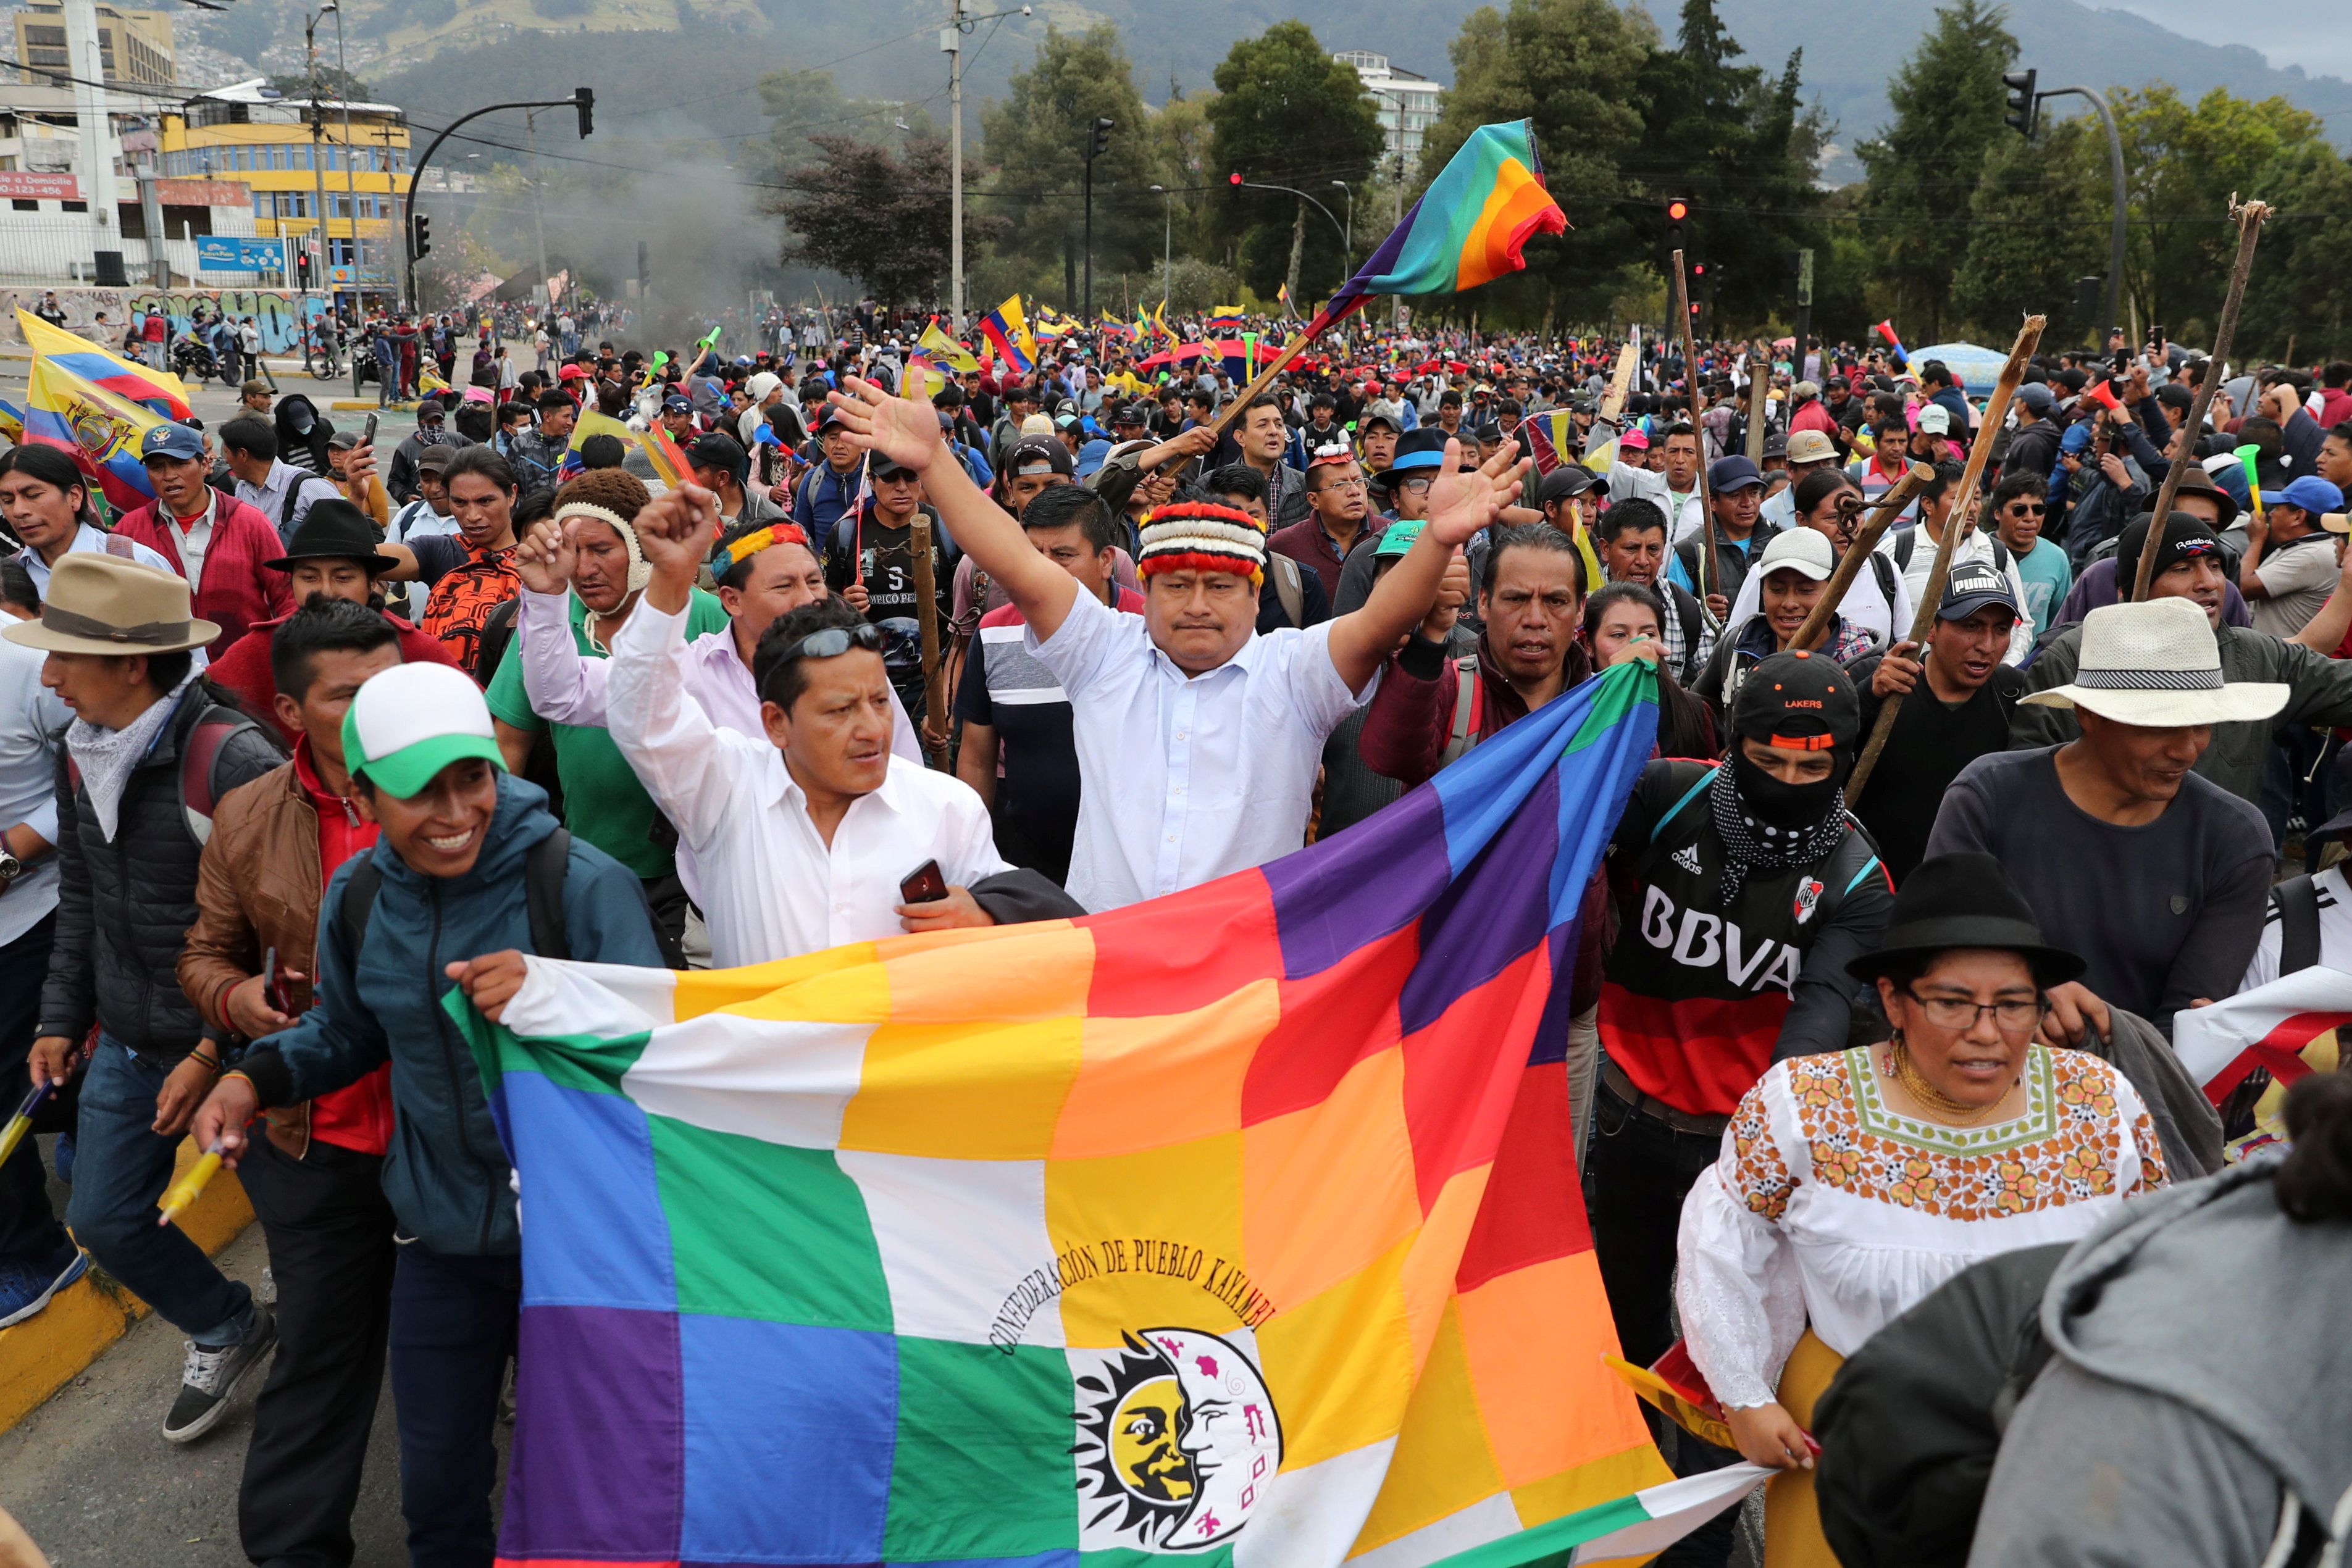 Al menos 10 personas murieron y 1340 resultaron heridas de acuerdo con el último balance de la Defensoría del Pueblo de Ecuador.